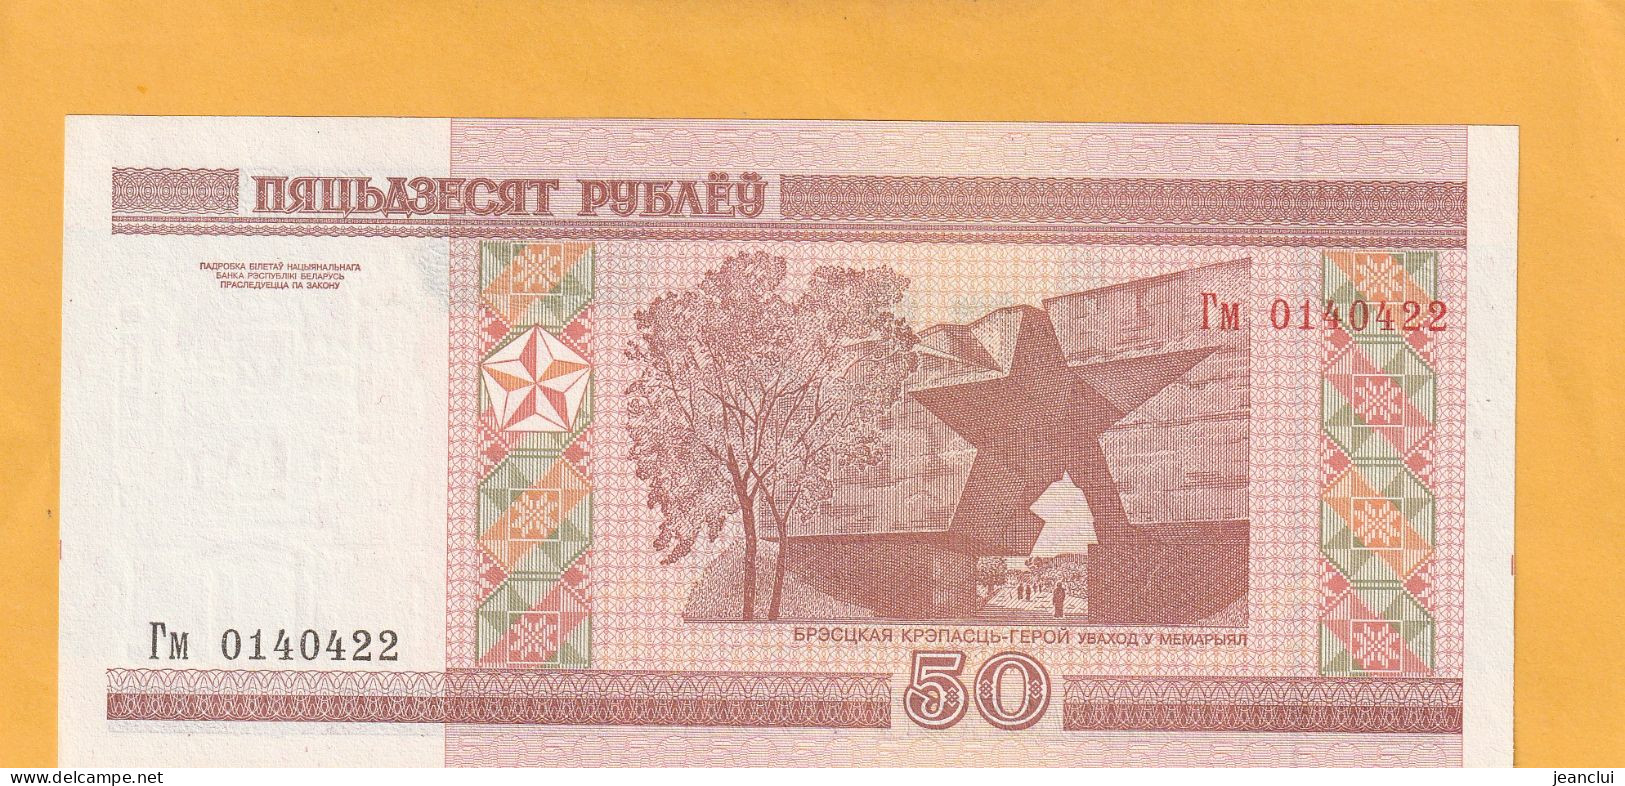 BELARUS NATIONAL BANK  .  50 RUBLEI  .  2000  .    N°  0140422  . 2 SCANNES  .  ETAT LUXE UNC  . - Bielorussia